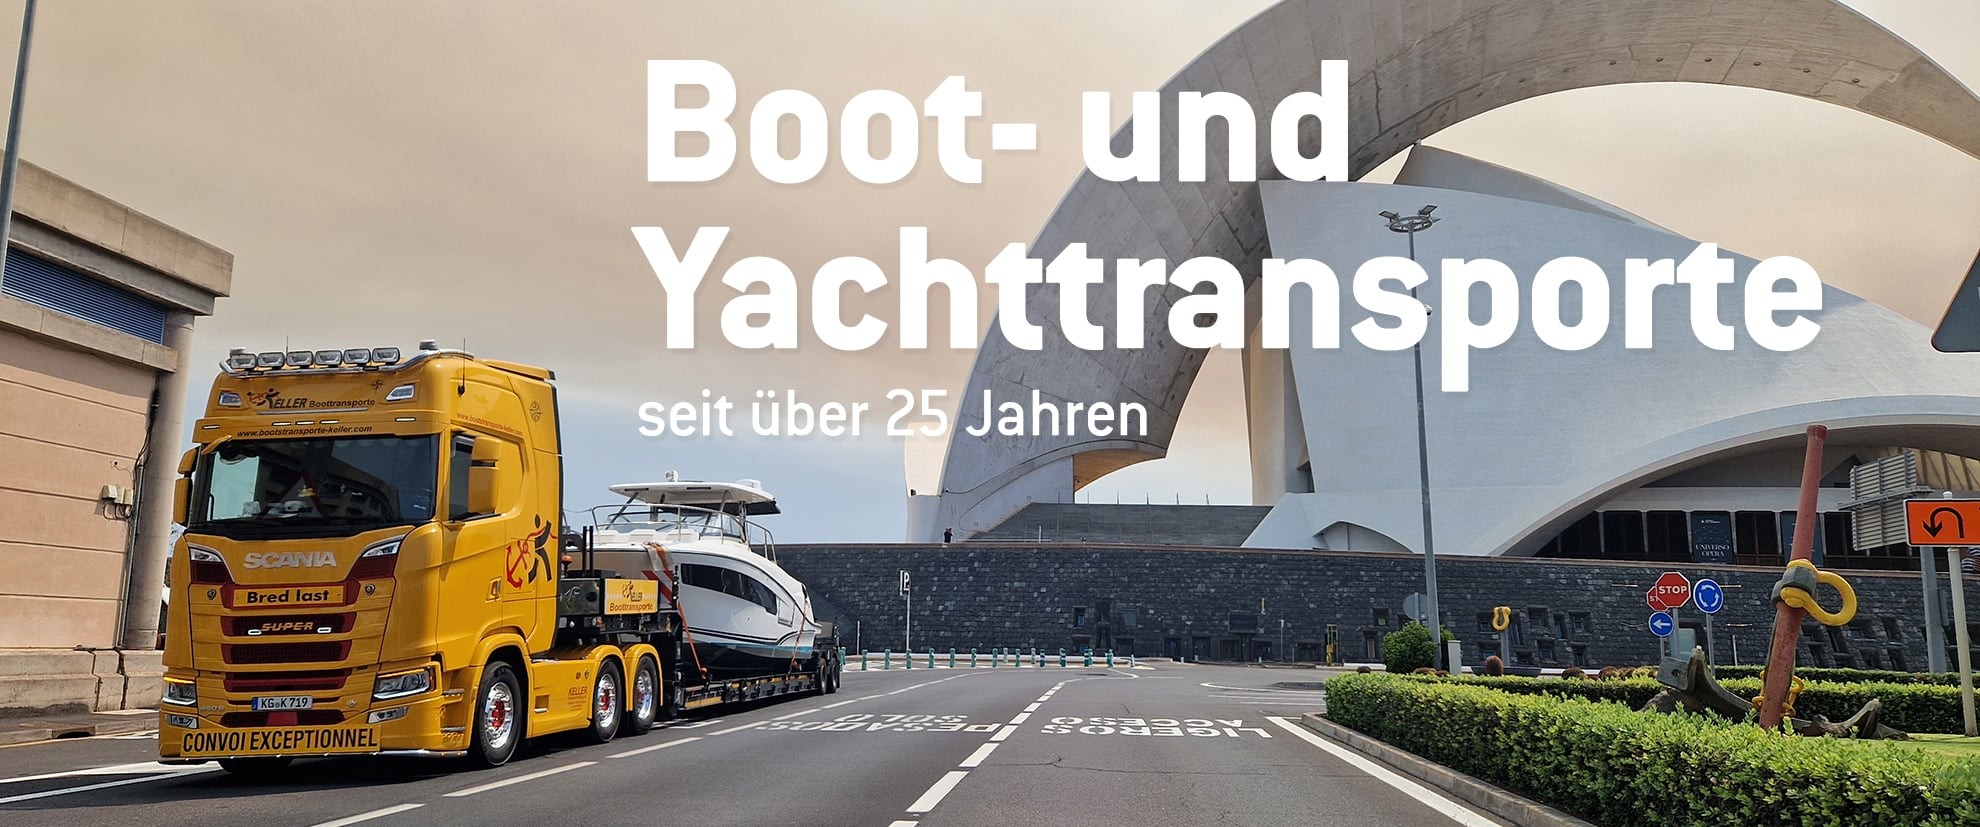 Keller Transporte: Boottransporte und Yachttransporte